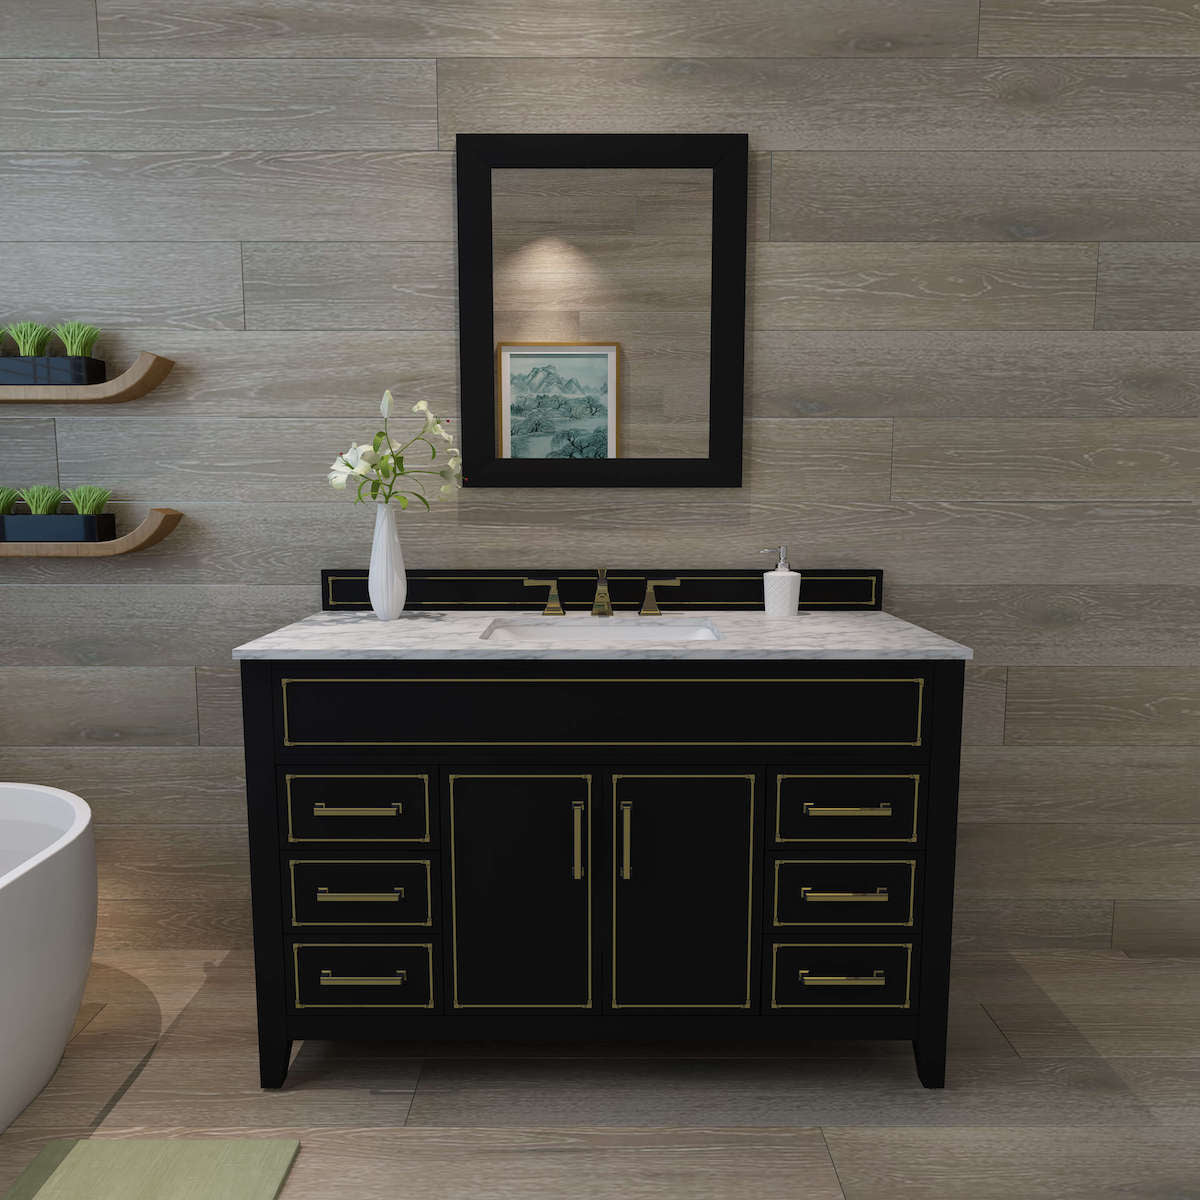 Ancerre Designs Back Onyx Aspen 48” Single Vanity VTS-ASPEN-48-BO-CW-GD in Bathroom